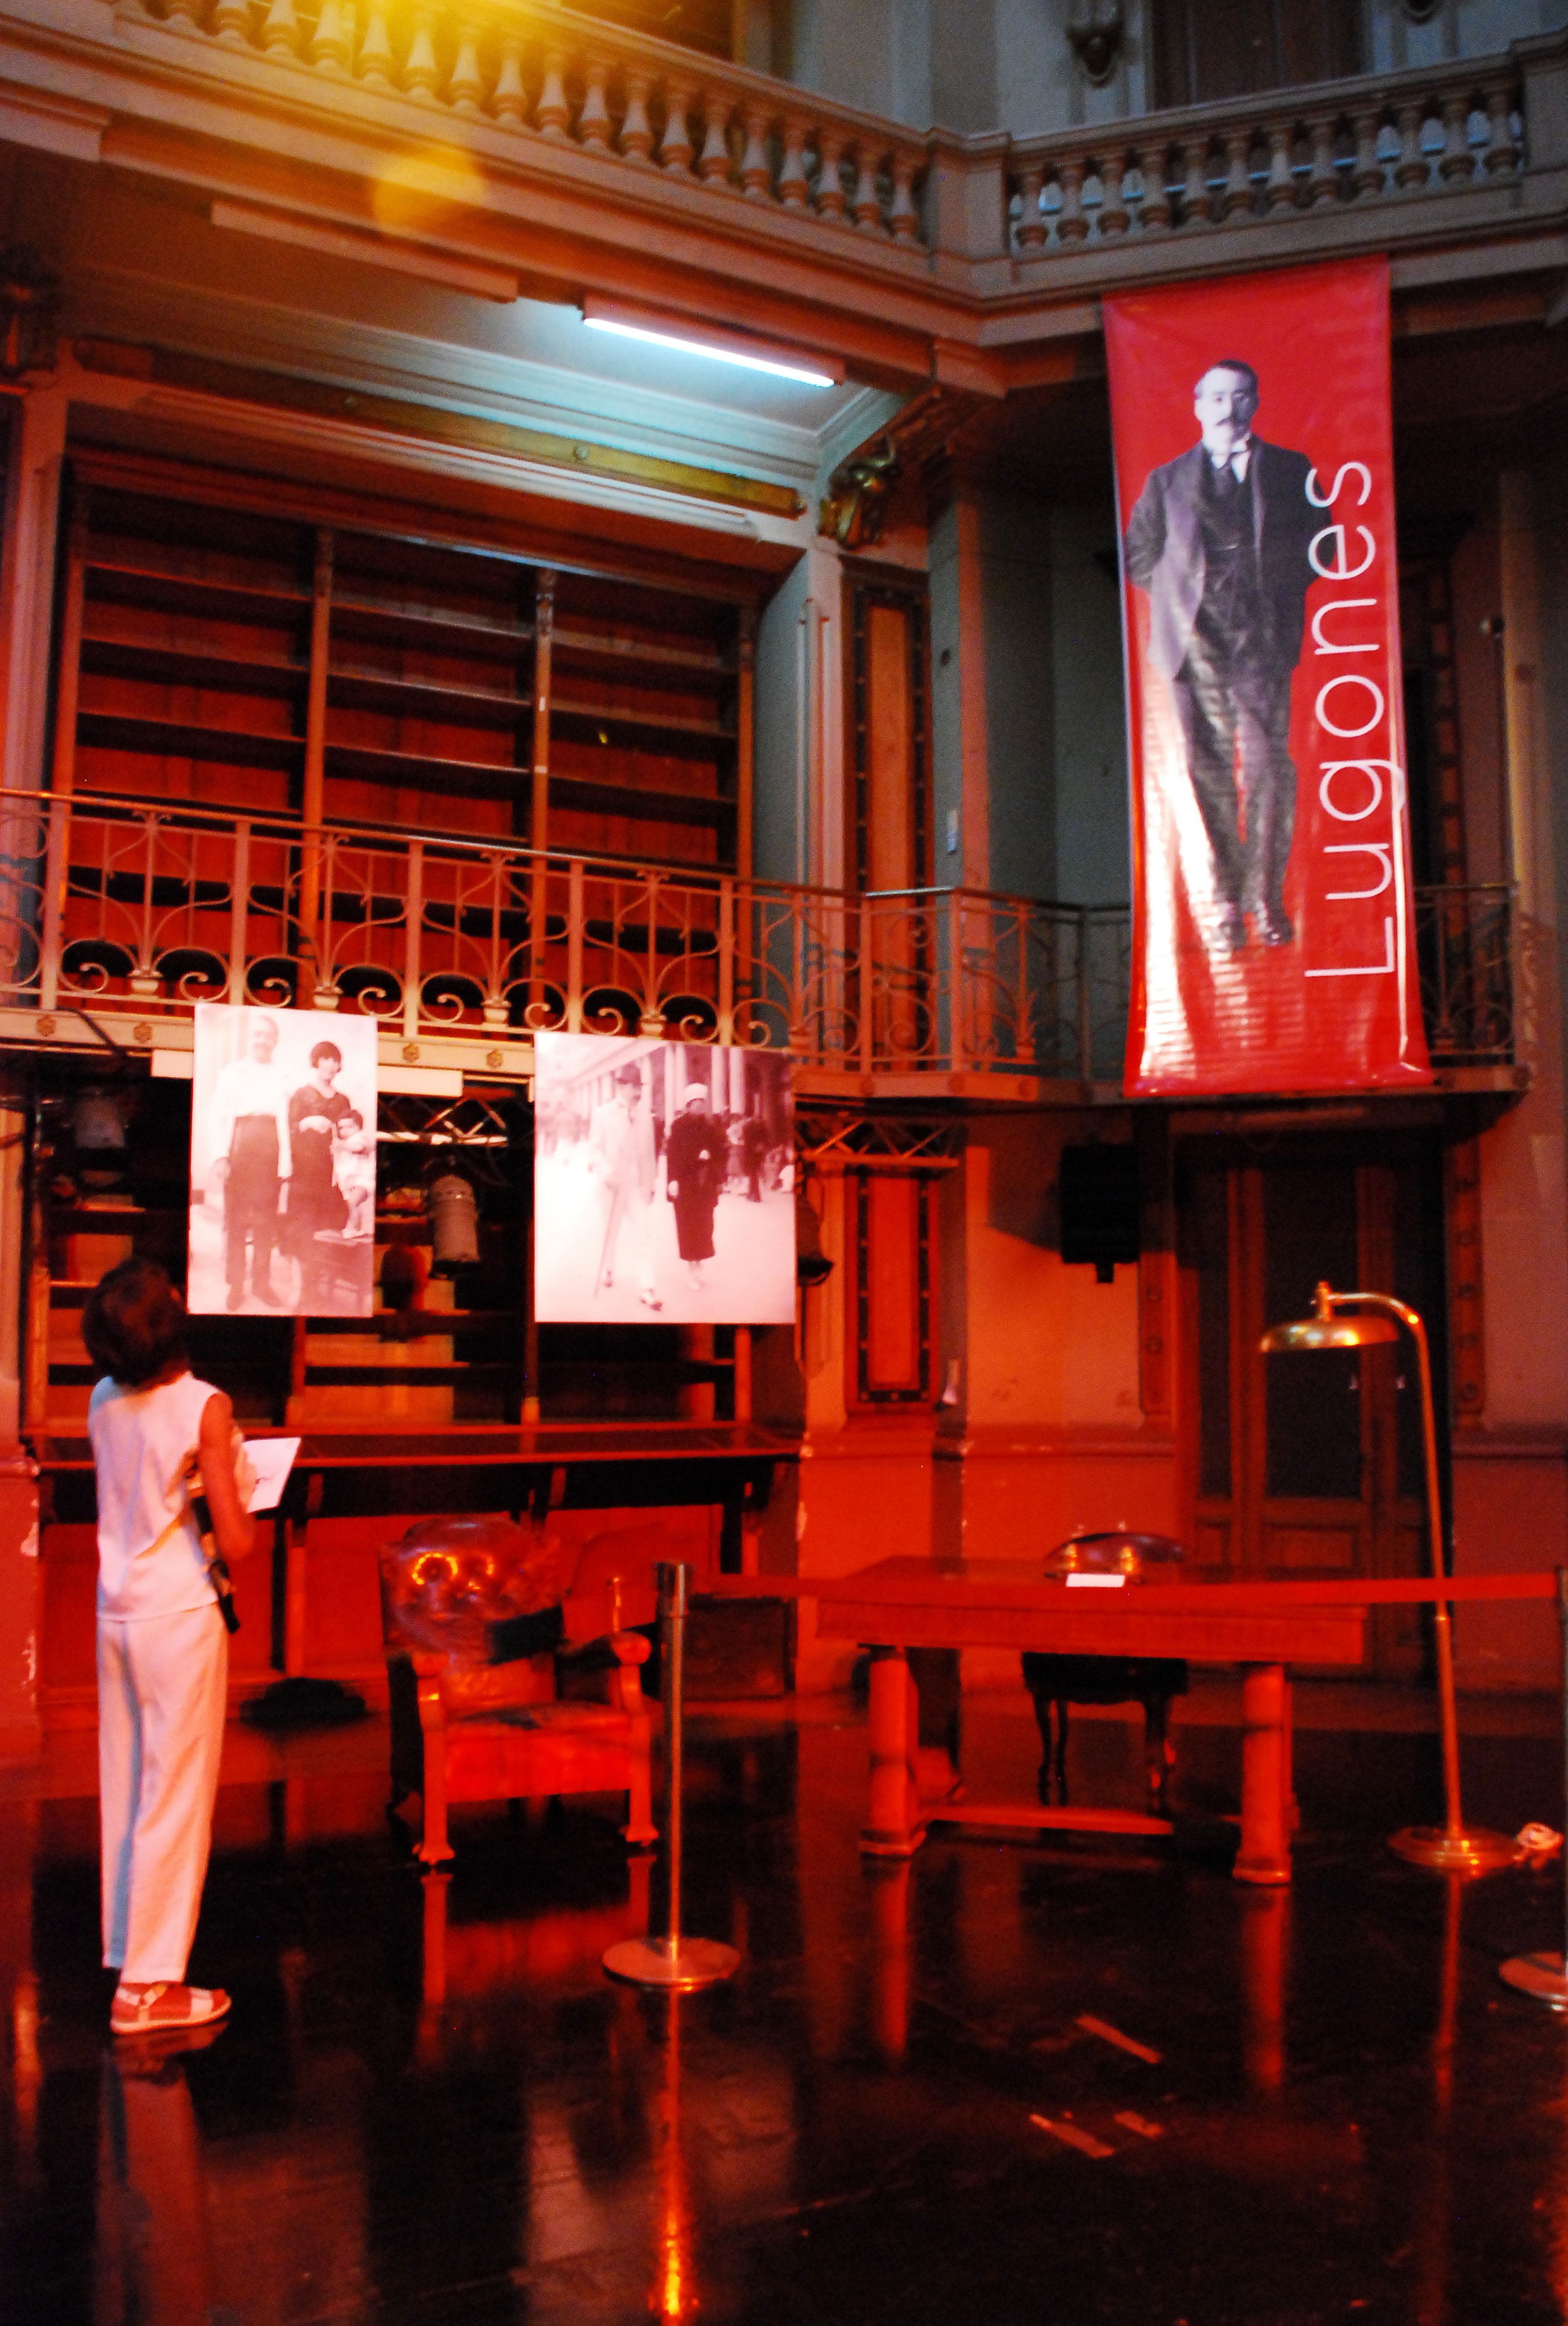 Fotografía de la exposición realizada con motivos del 80 aniversario del fallecimiento de Leopoldo Lugones. Muestra el escritorio del escritor, el sillón, fotos y una persona mirando la exposición.